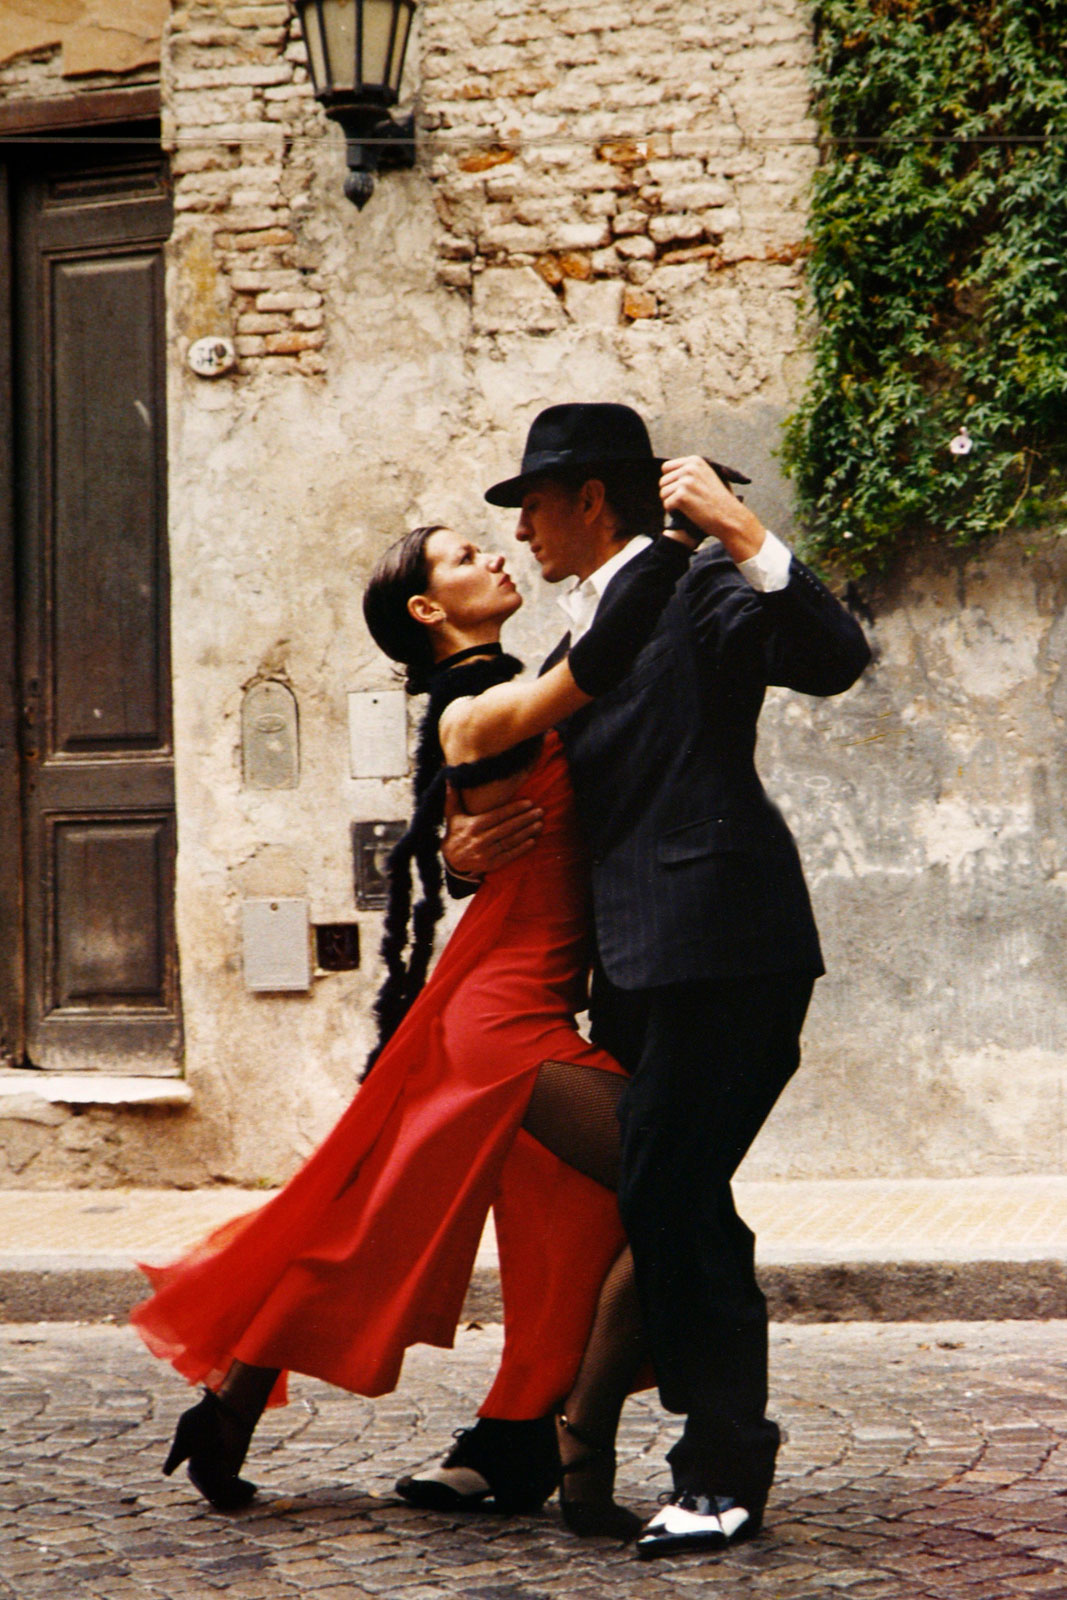 Agentina Tango - Culture in South America